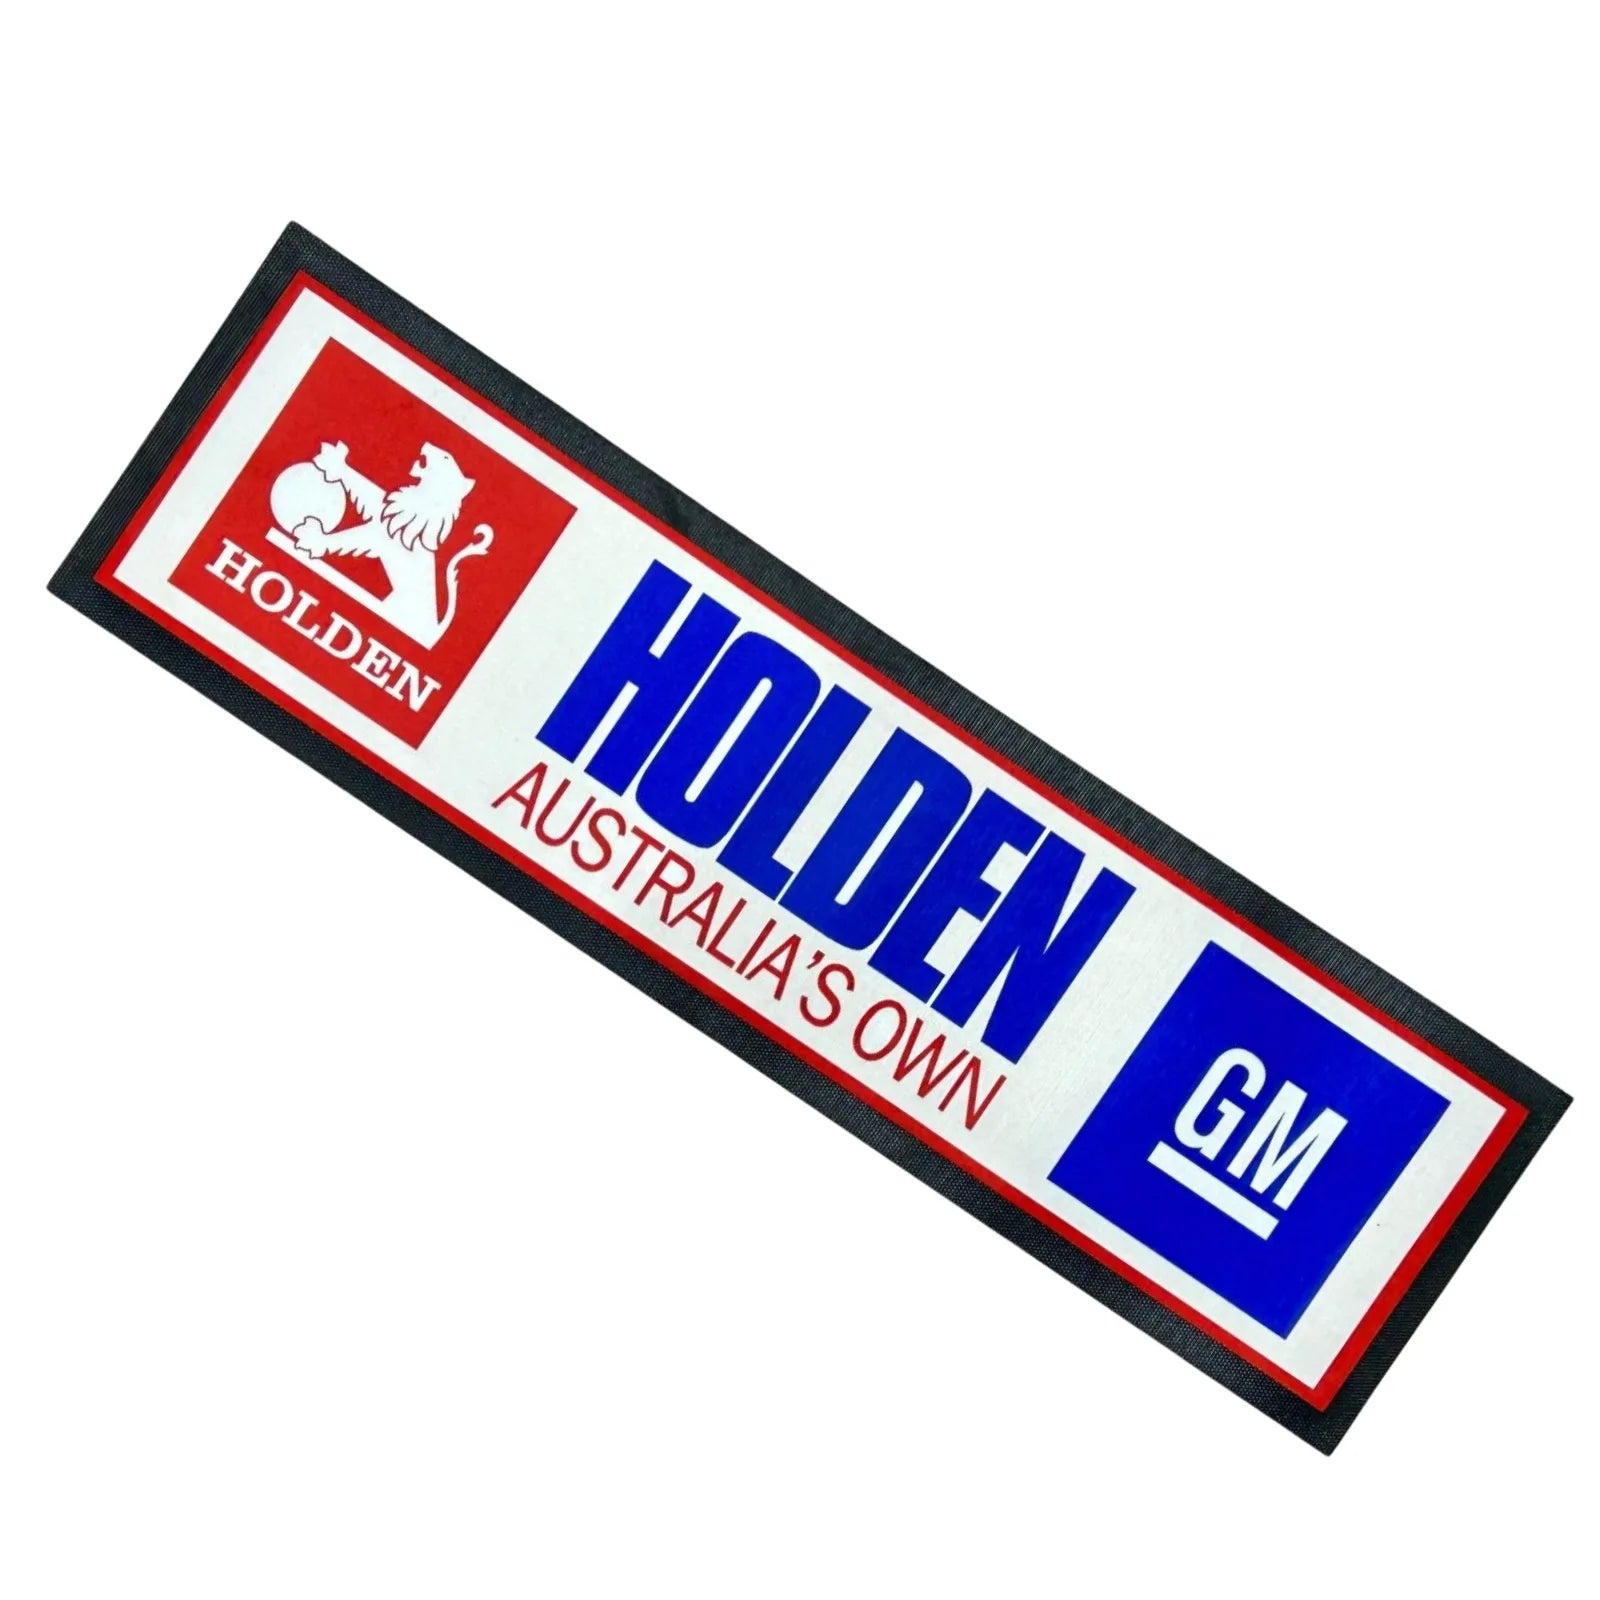 Holden GM Premium Rubber-Backed Bar Mat Runner - KING CAVE